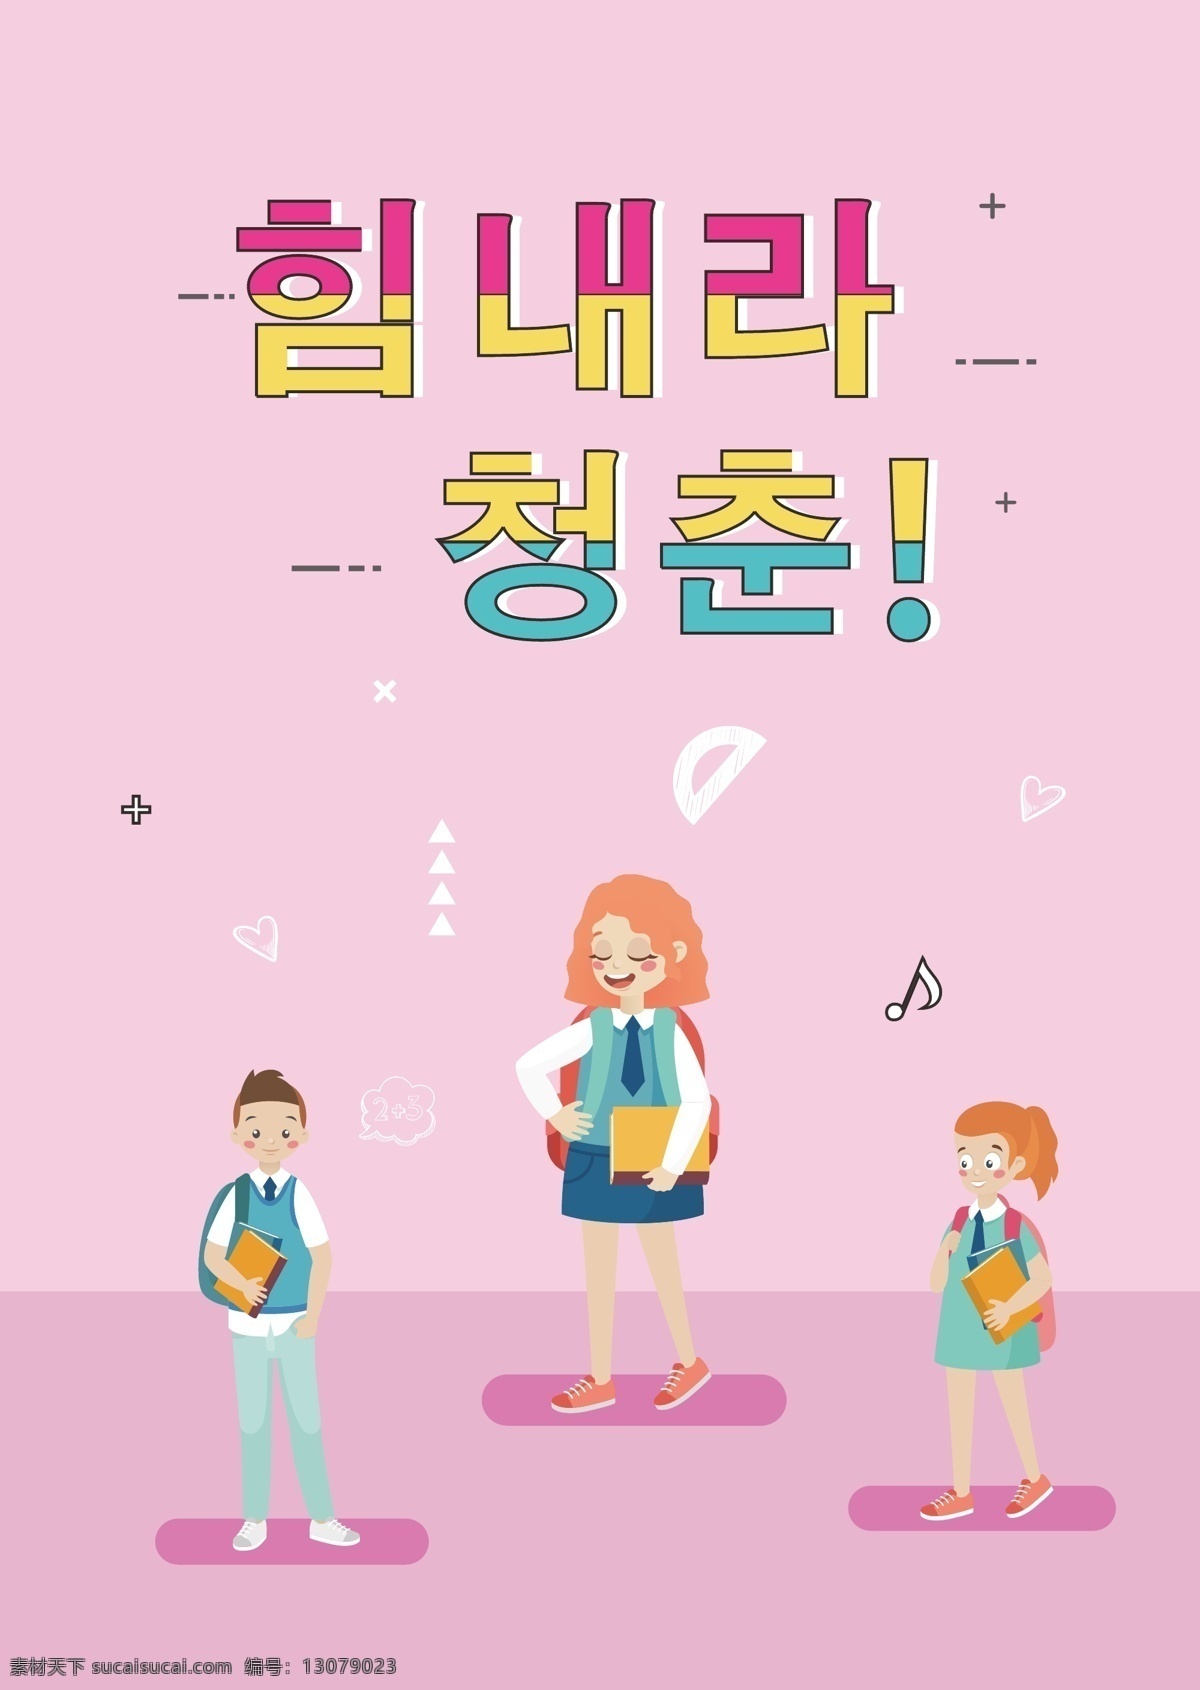 粉红色 学生 卡通 来临 青年 学习 海报 粉 蓝色 动画片 来吧 学生们 女孩 男孩 铅笔 彩虹 朝鲜的 教科书 开玩笑 颜色